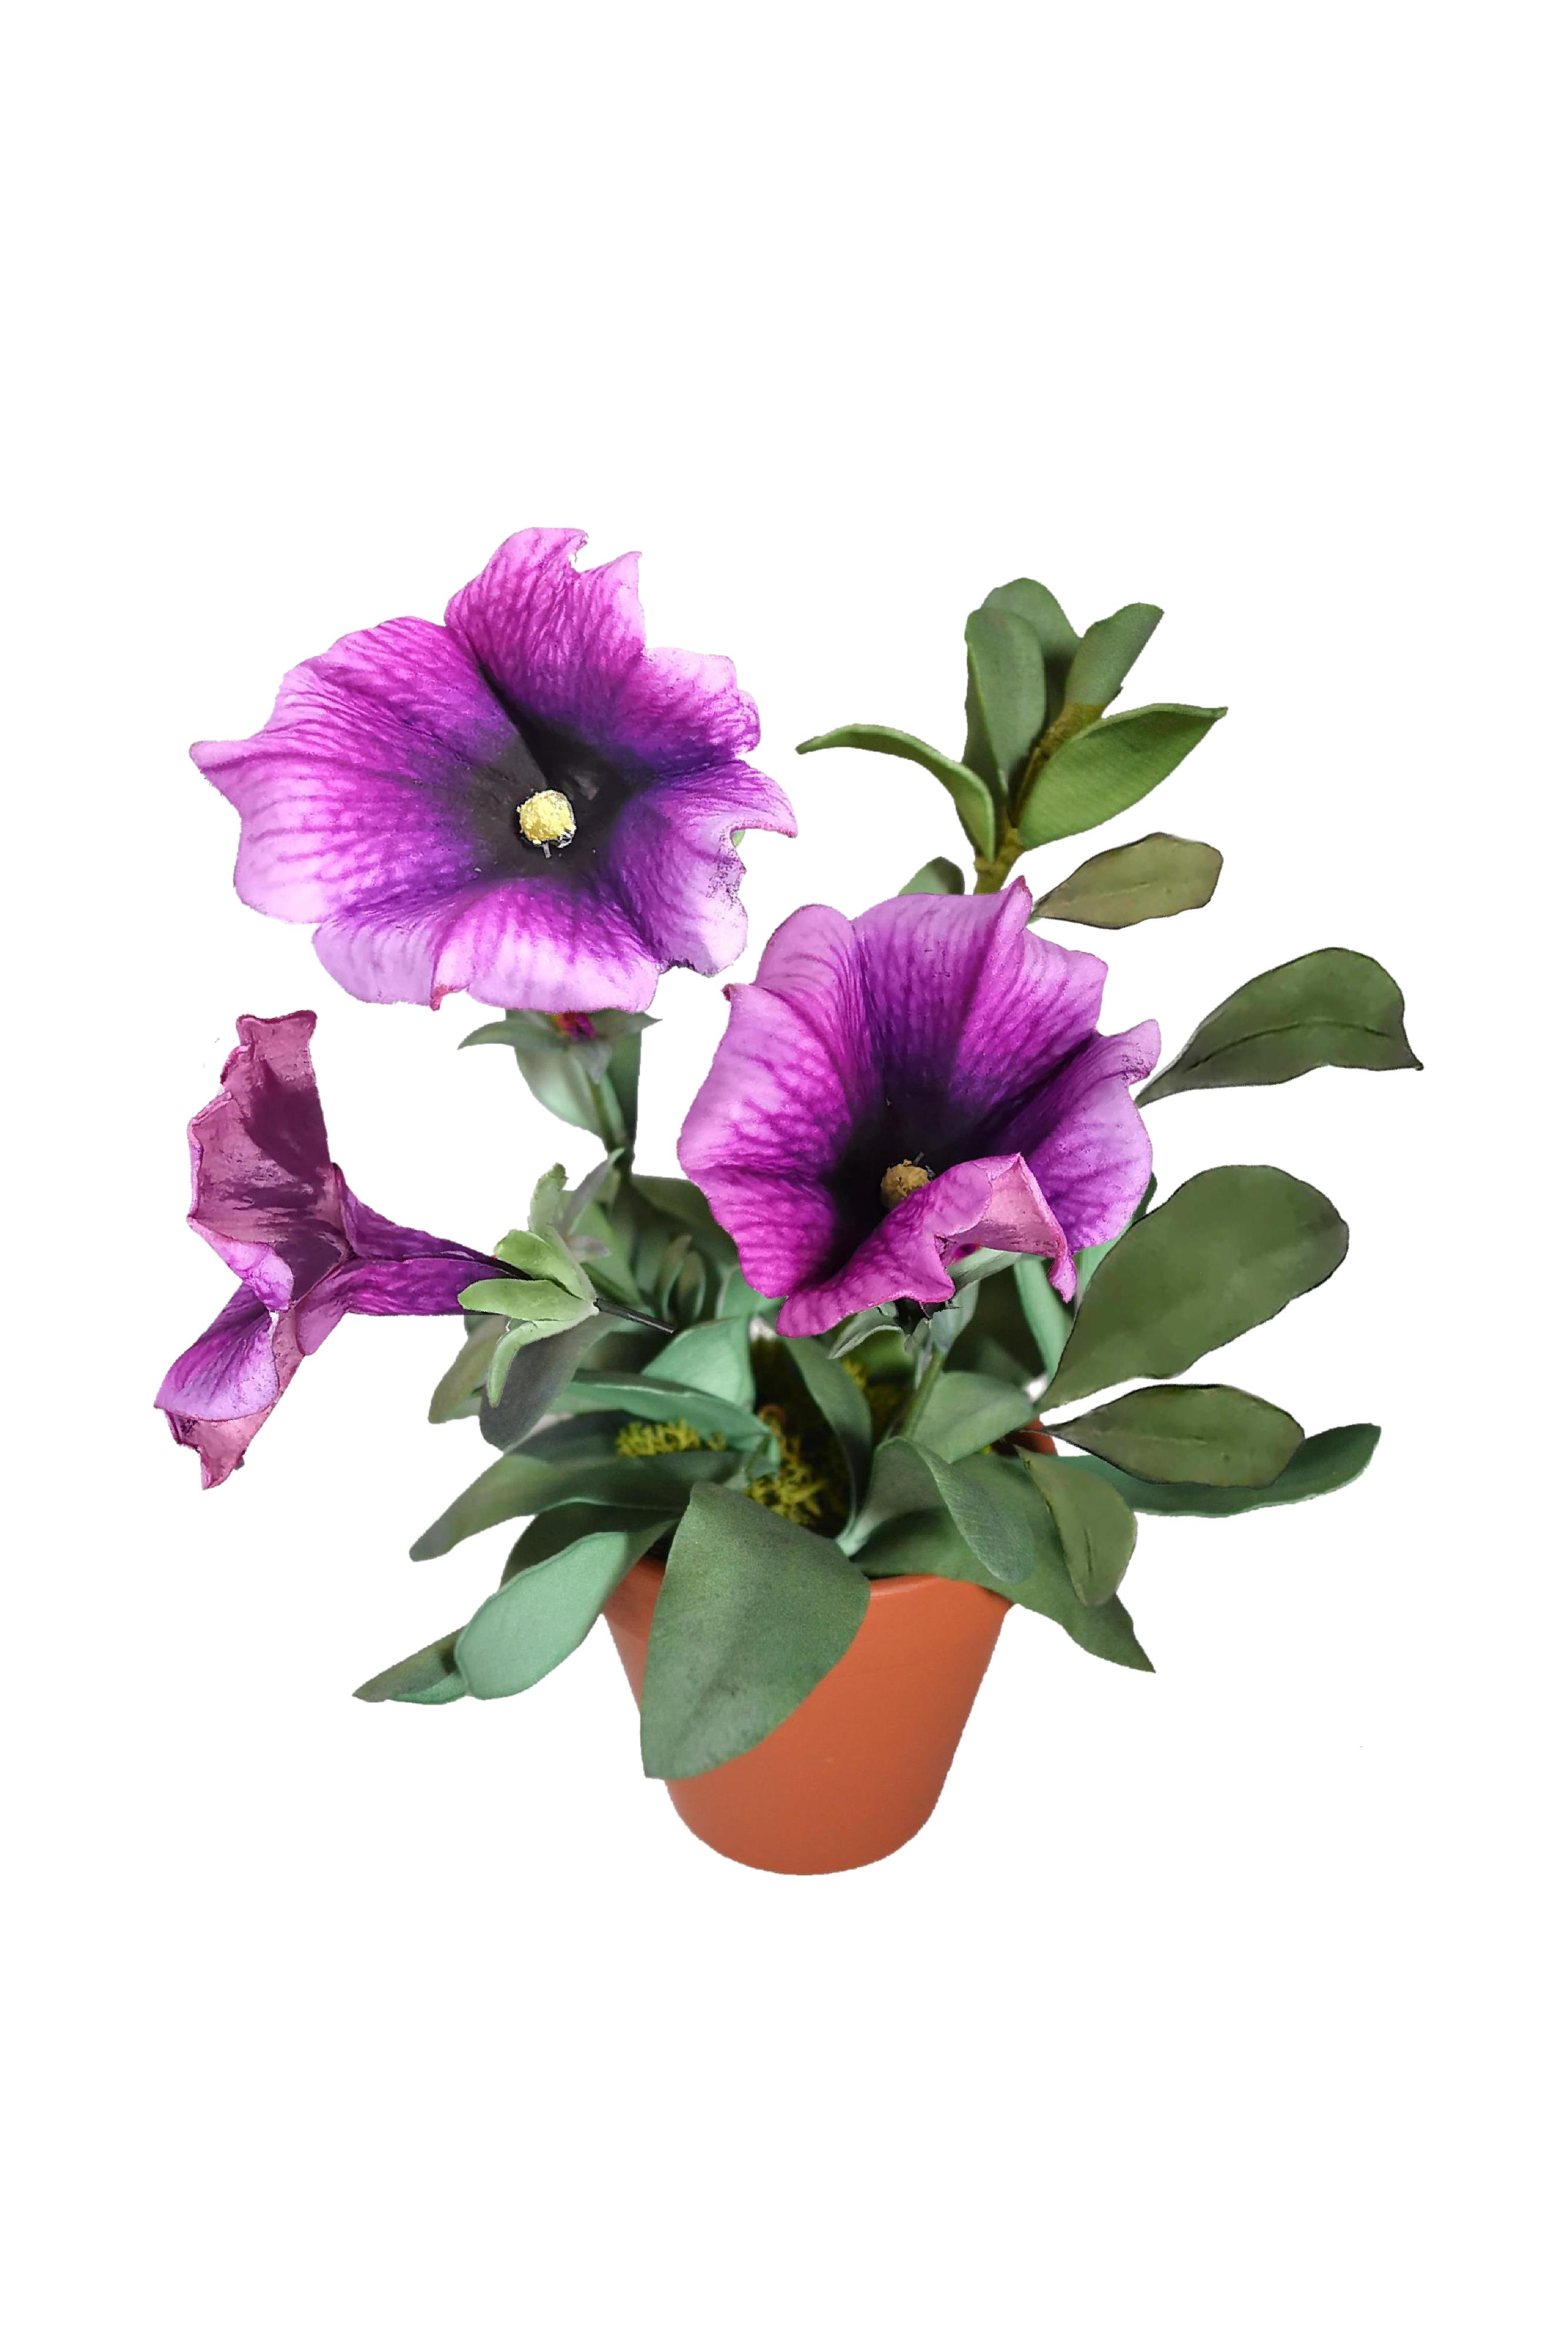 Pianta Petunia bicolor con Stampa B-R3D-P0104a 